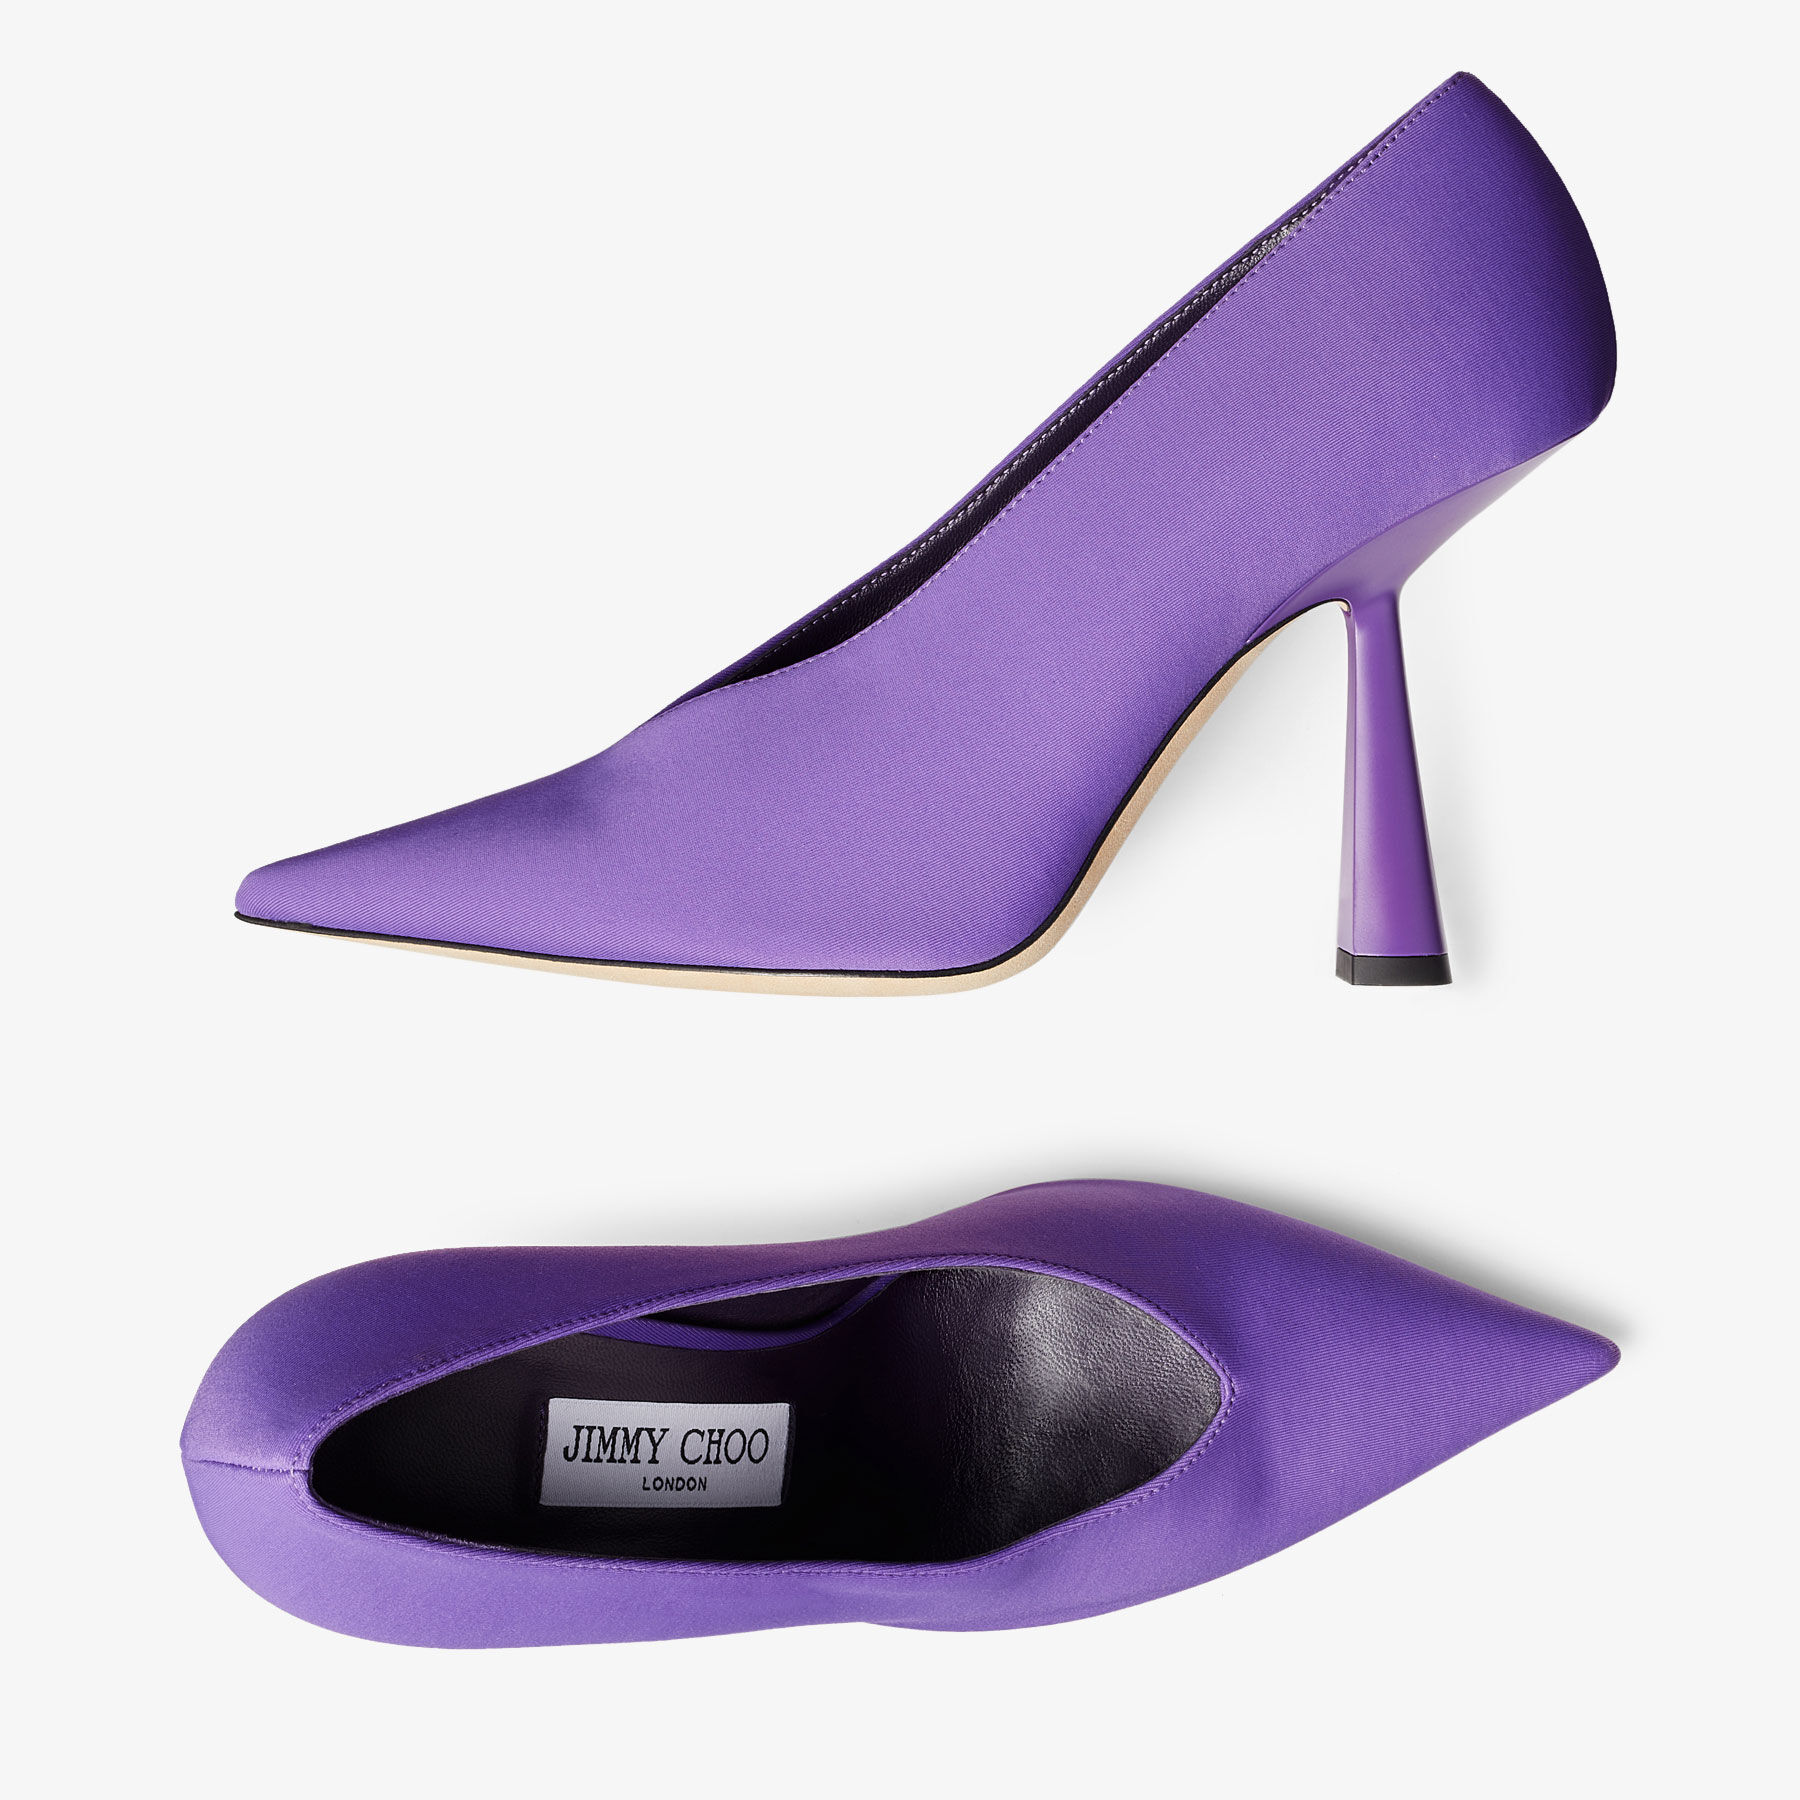 Jimmy Choo Purple Heels for Women | eBay